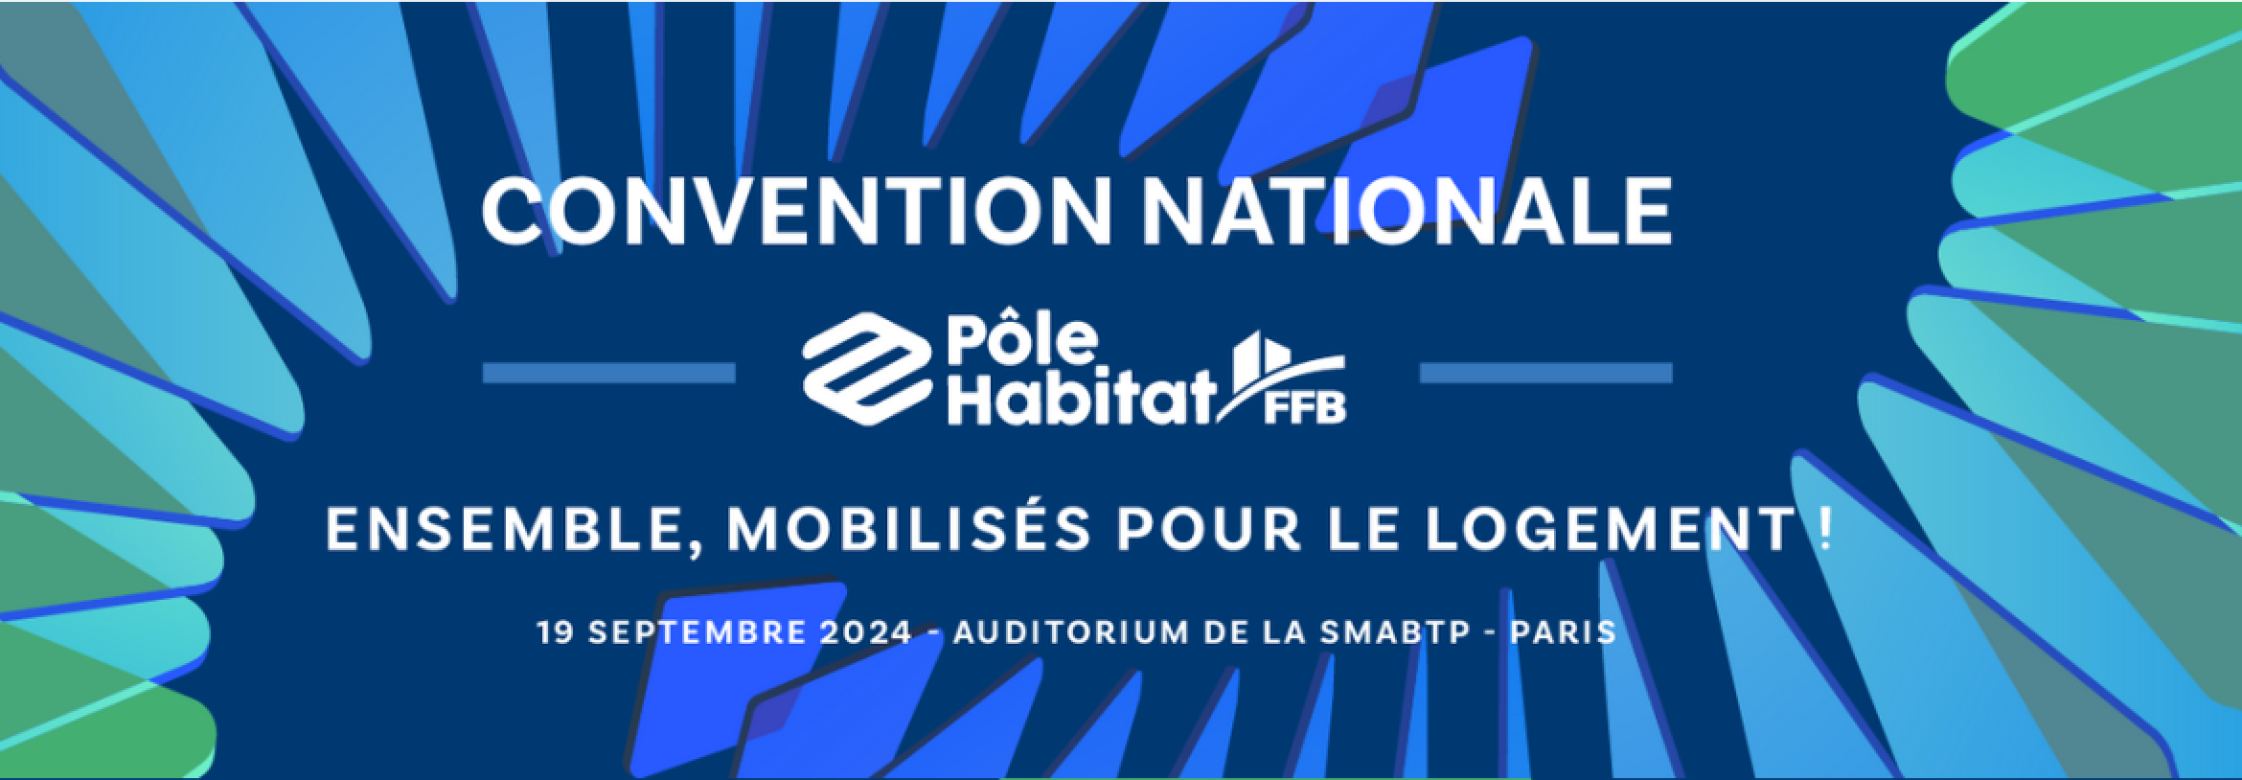 affiche de la Convention nationale PH-FFB 2024